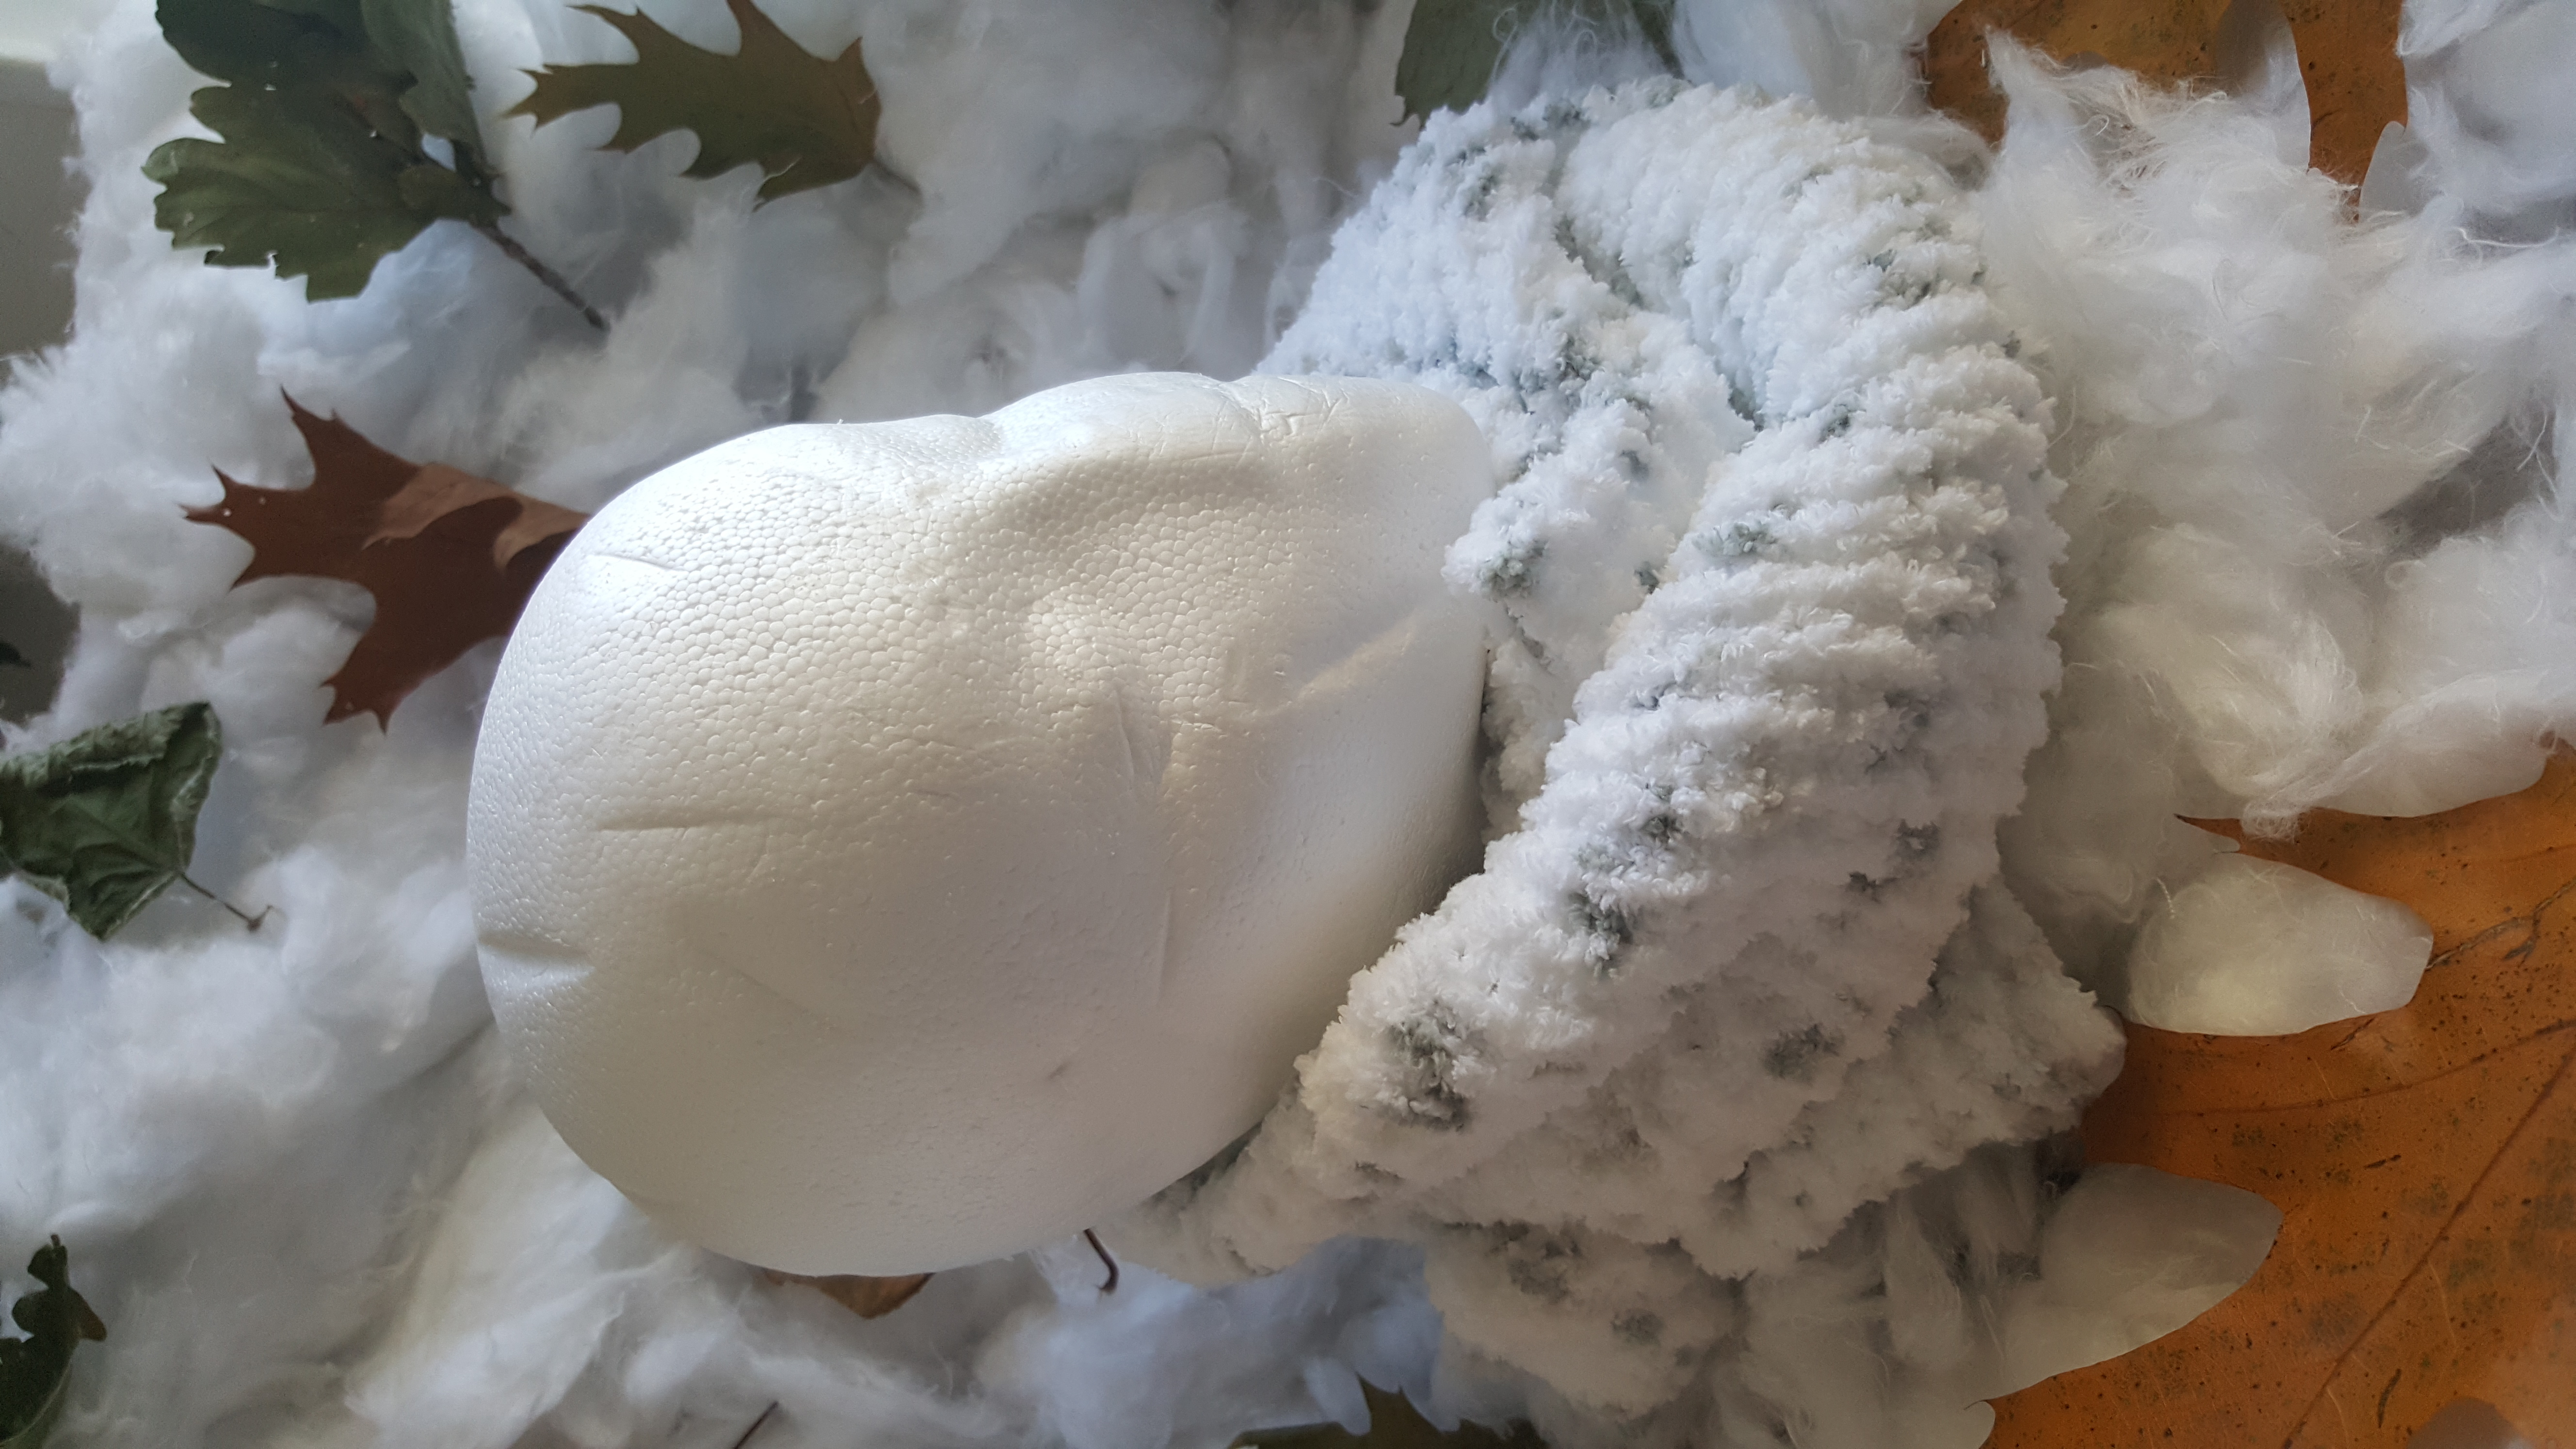 Echarpe laine chenille - créations de maryline